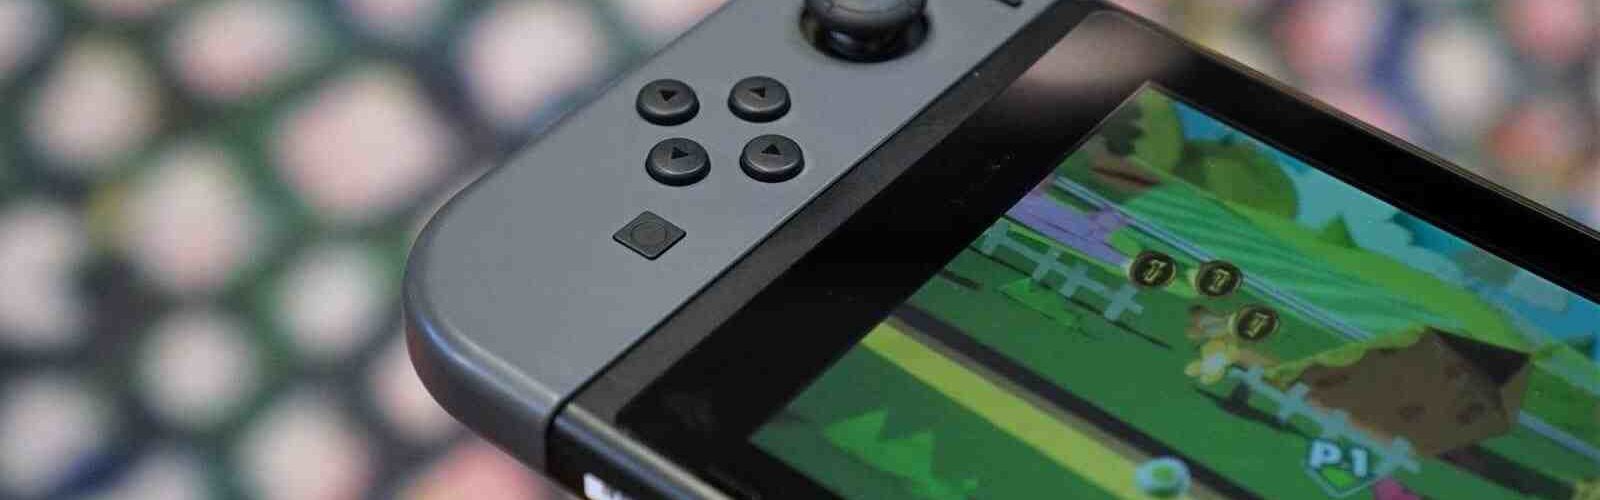 Offres de jeux vidéo : Codes de jeux numériques Nintendo Switch sur Amazon | EW.com